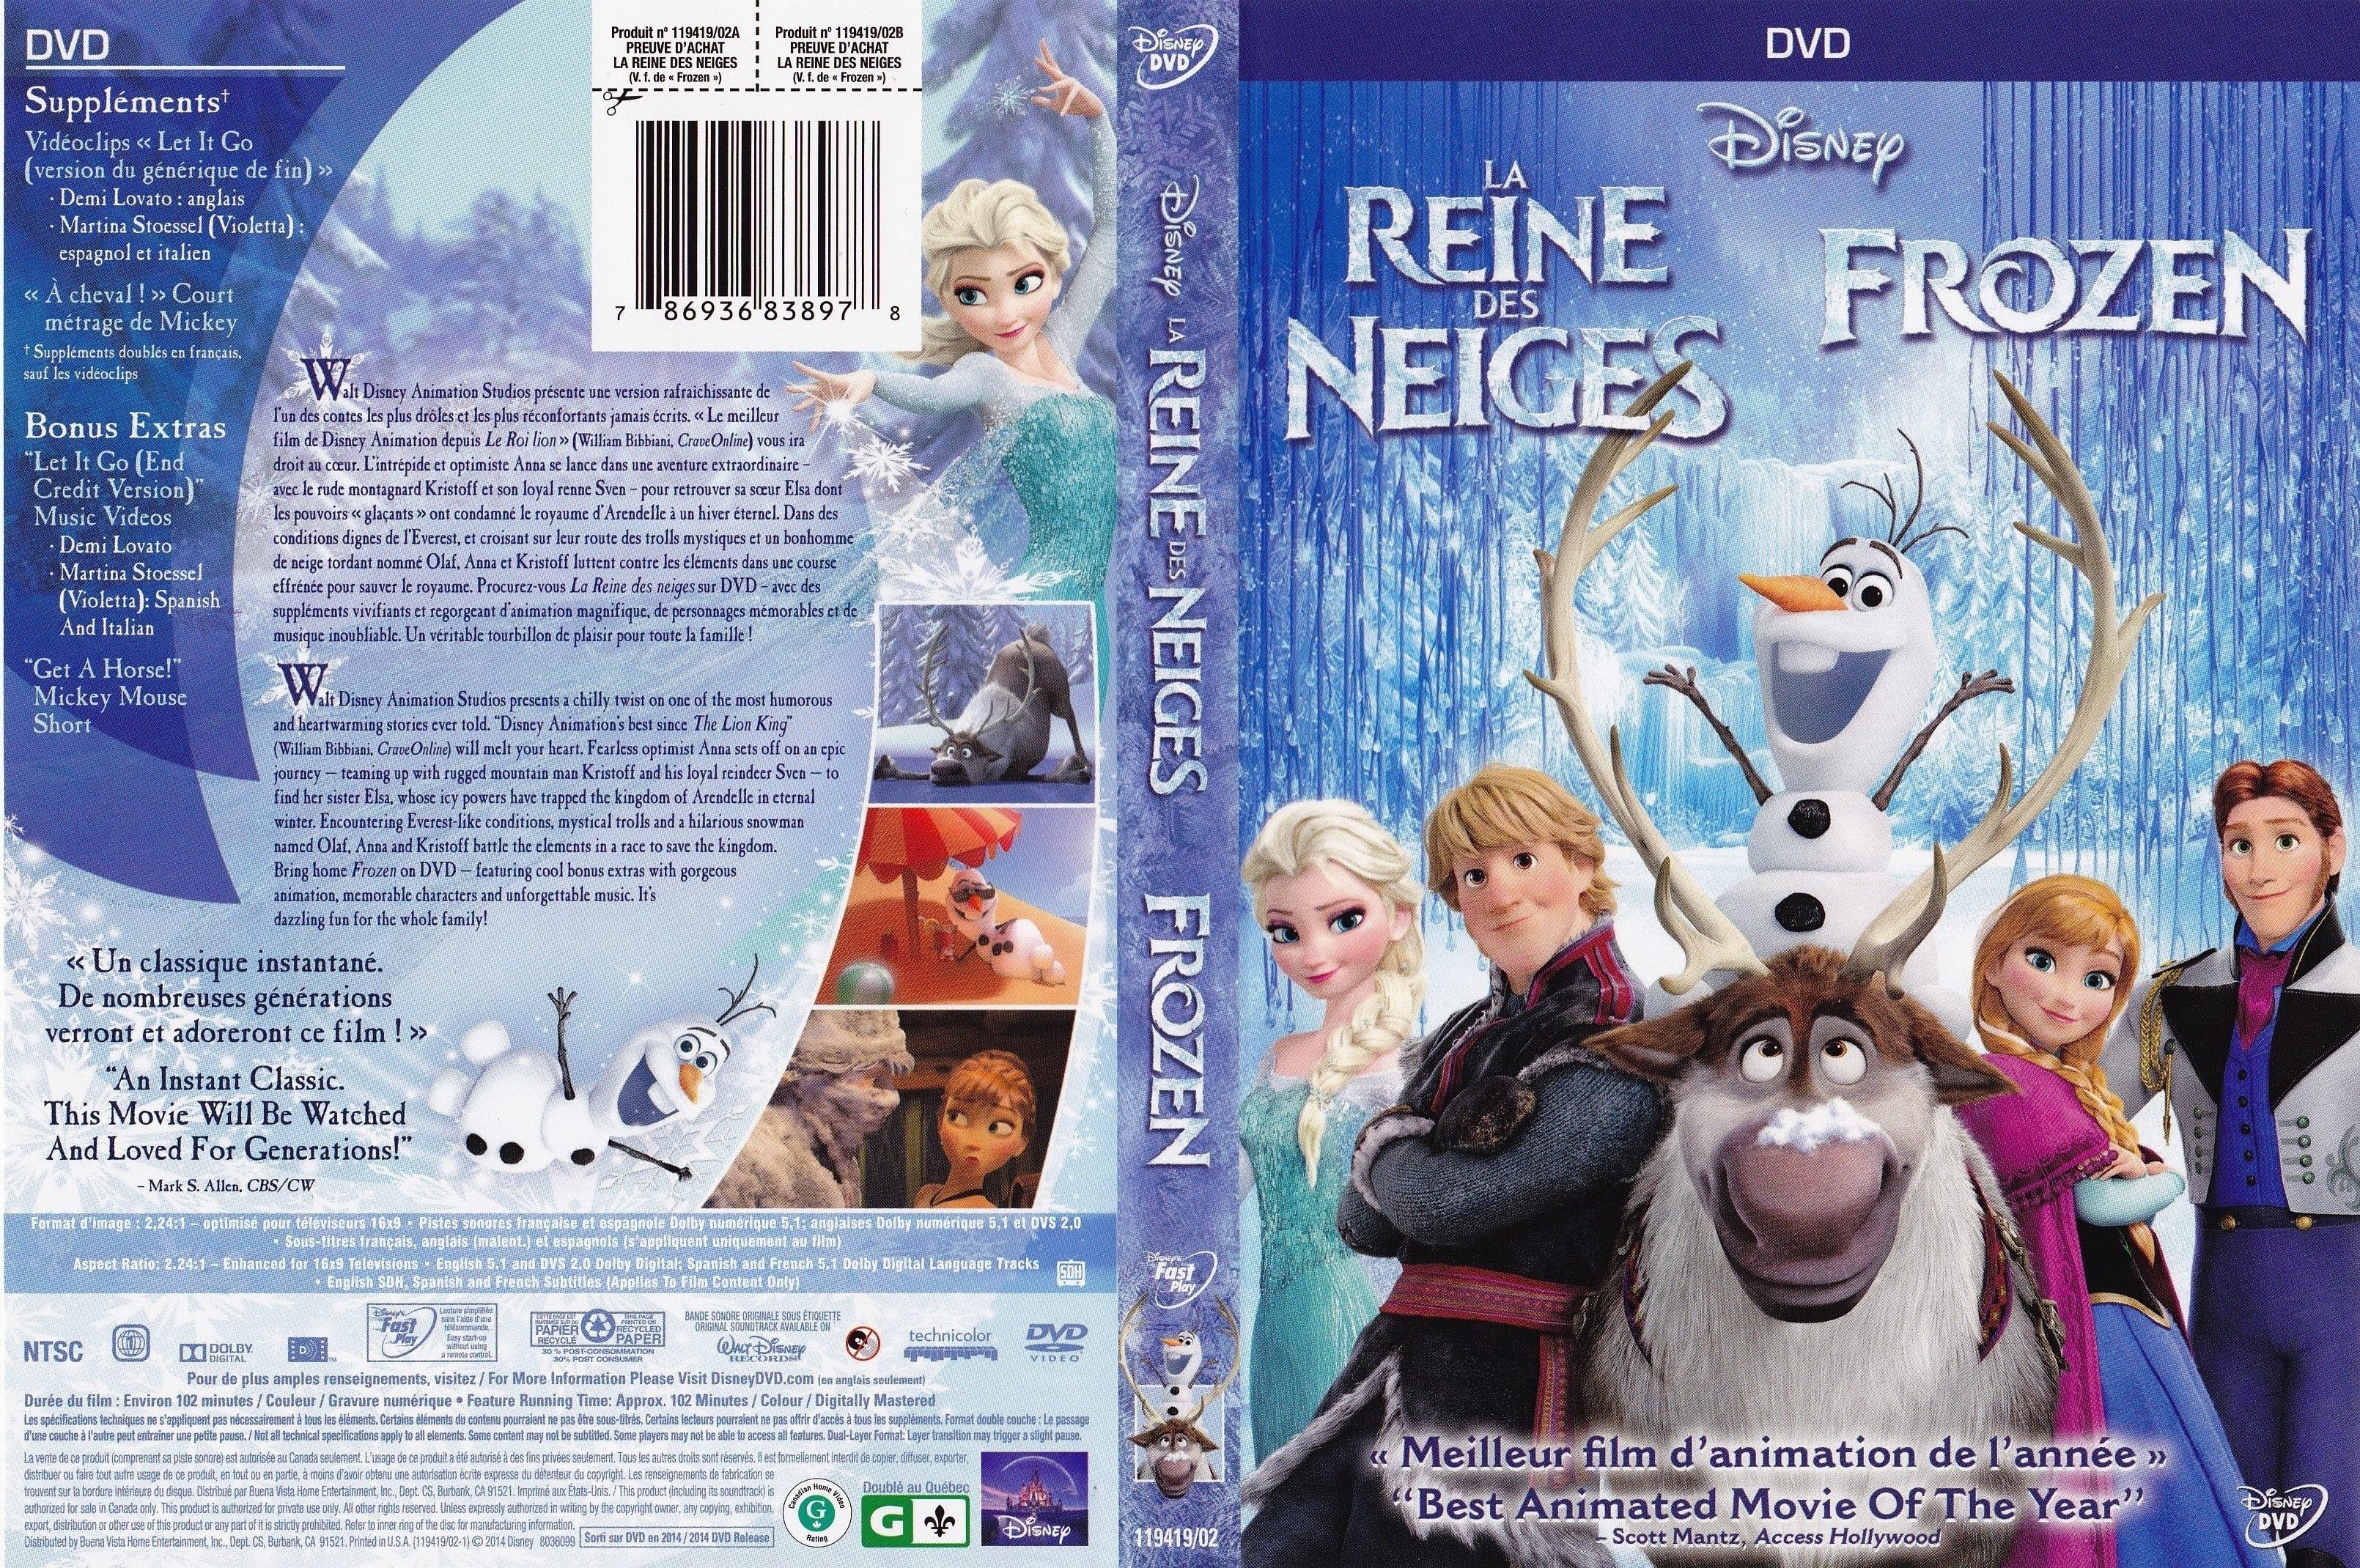 Jaquette DVD La reine des neiges - Frozen (Canadienne)